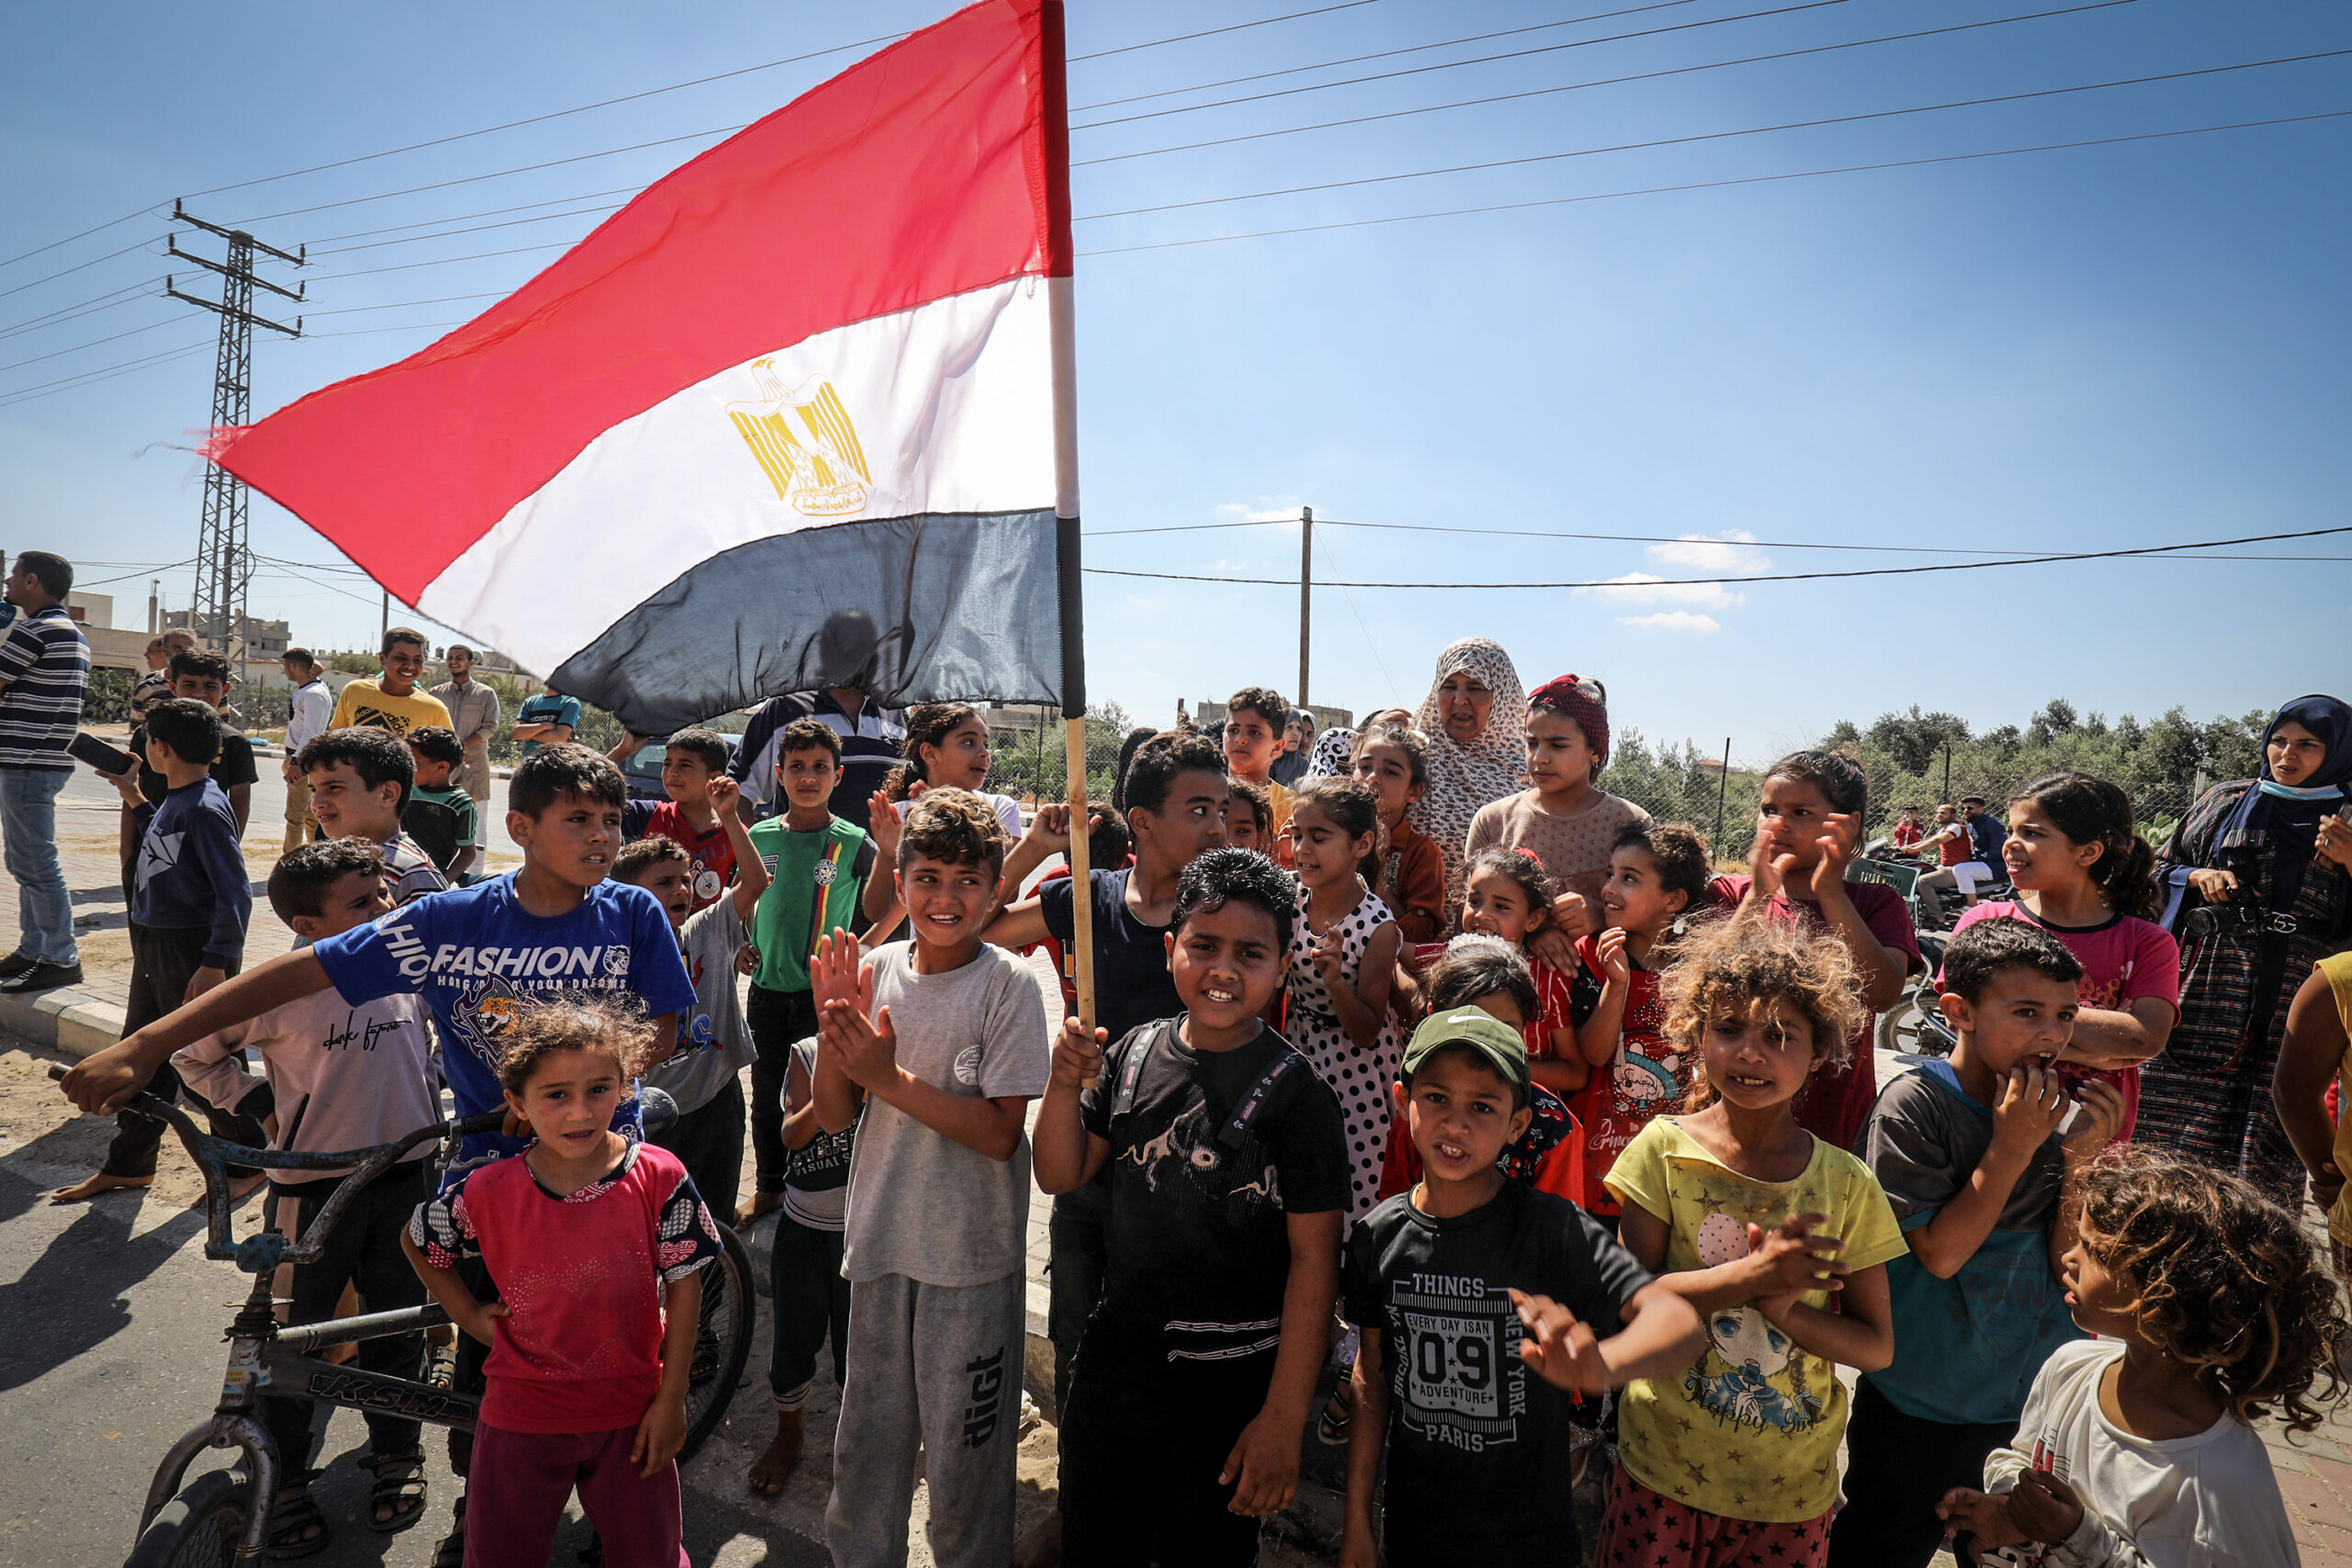 ילדים בעזה מקבלים פני משאיות ציוד שנכנסות לעזה ממצרים דרך מעבר רפיח, 4 ביוני 2021 (צילום: עבד רחים ח'טיב / פלאש90)